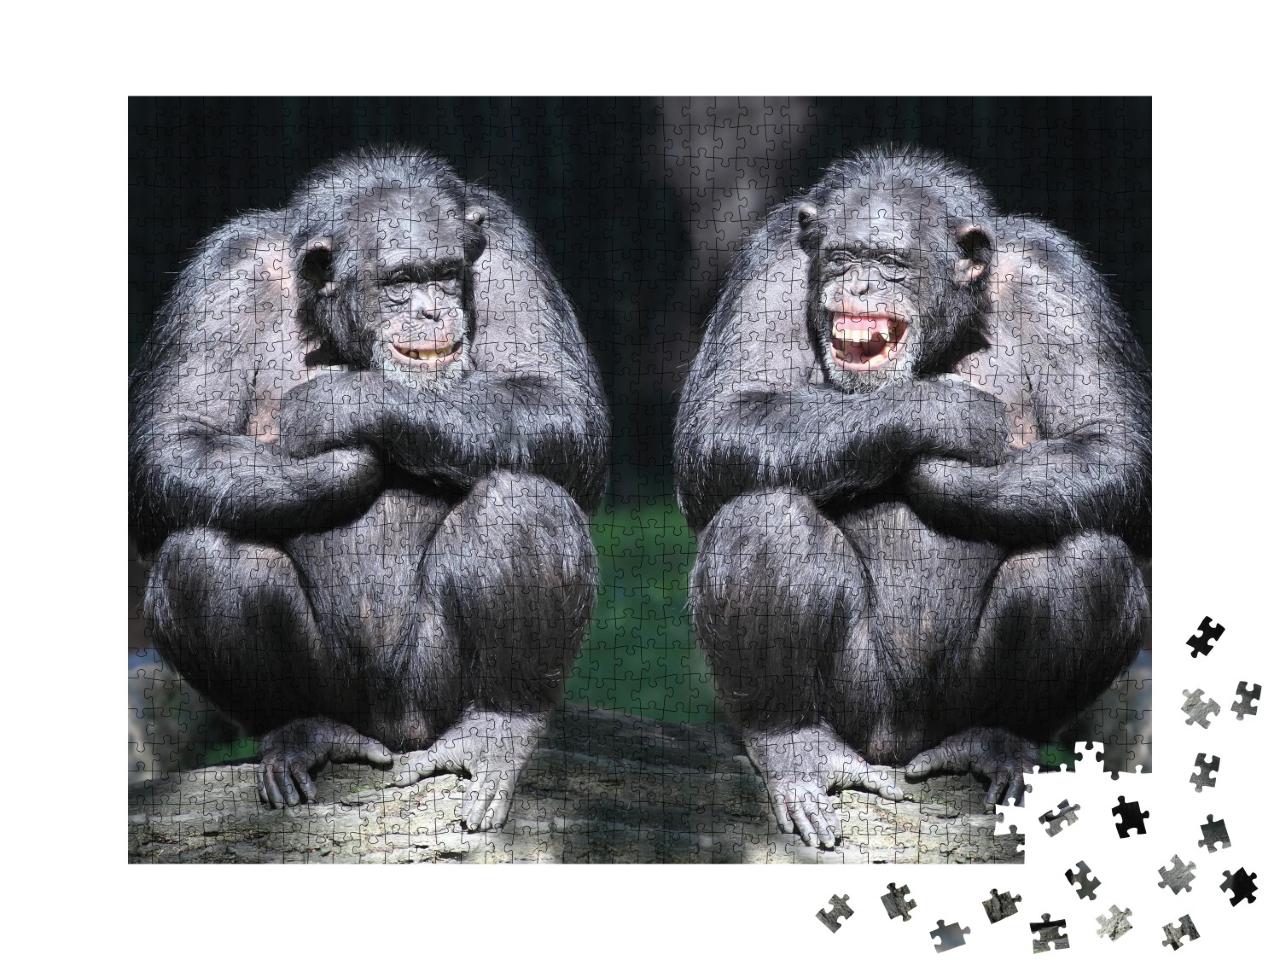 Puzzle de 1000 pièces « Deux chimpanzés en gros plan »